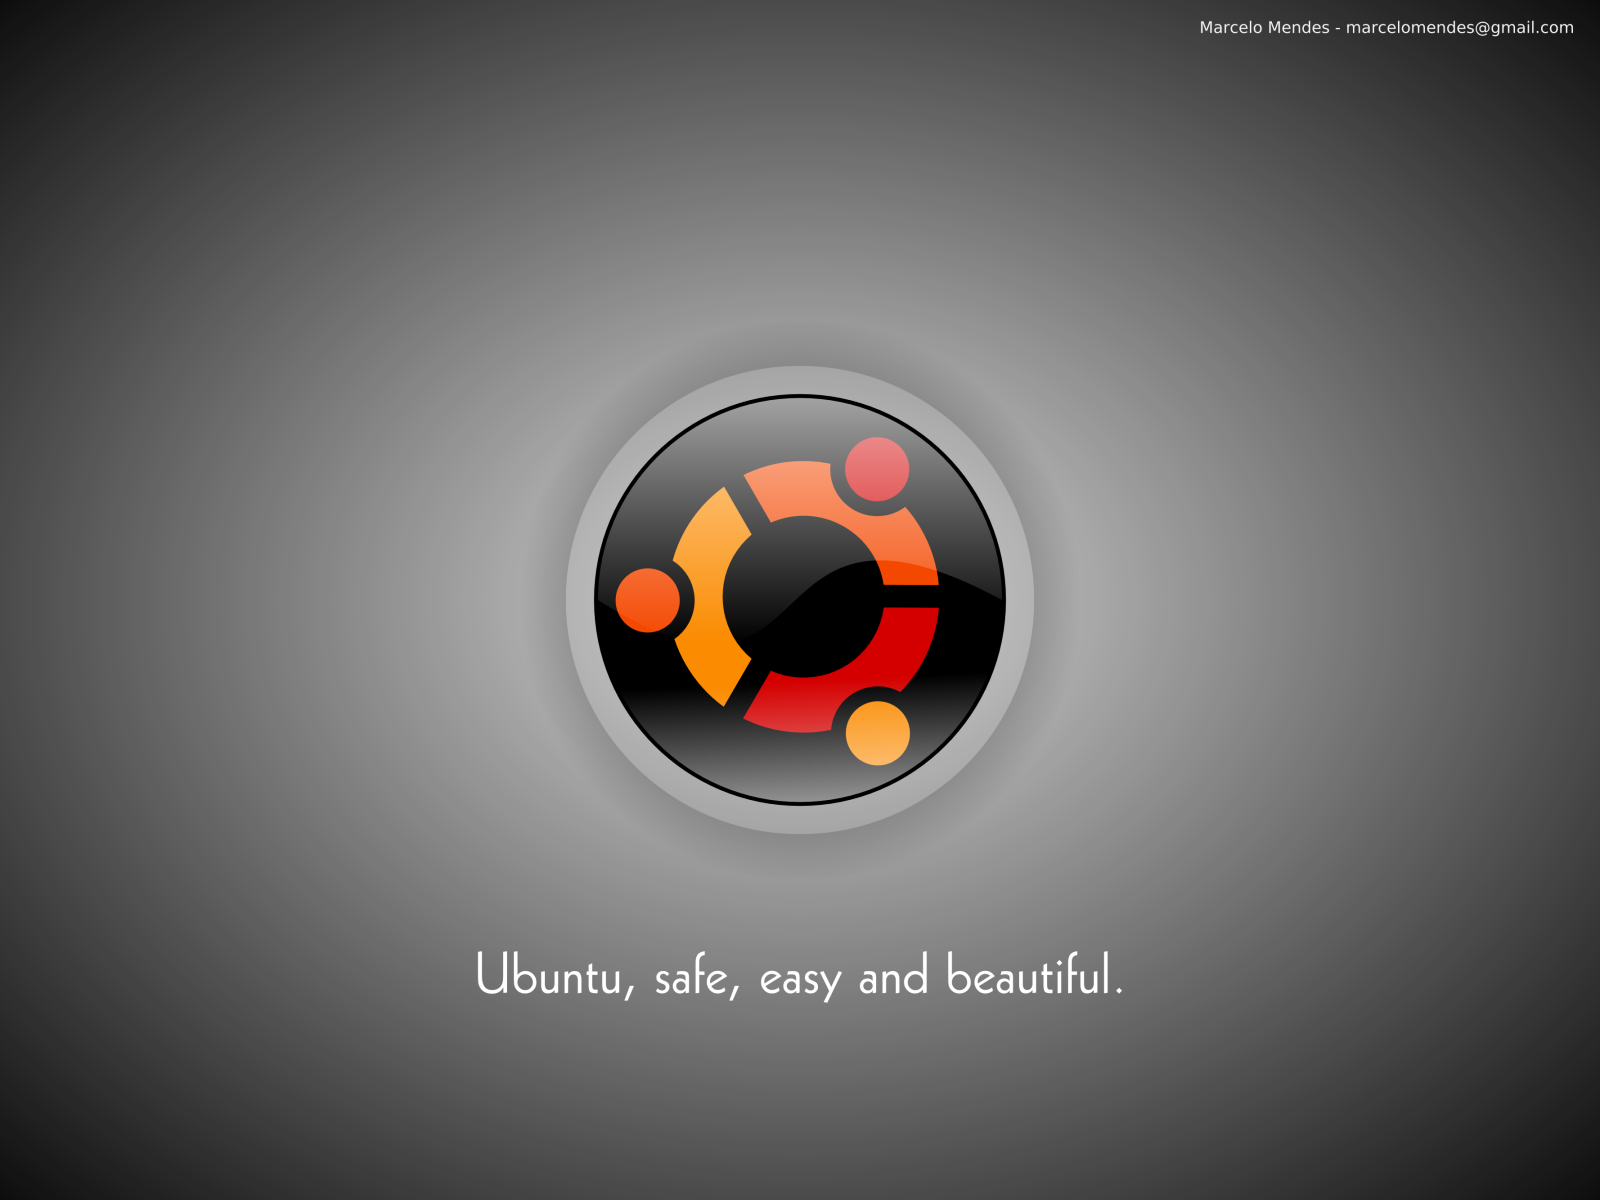 File Iso Ubuntu Graycyber Art